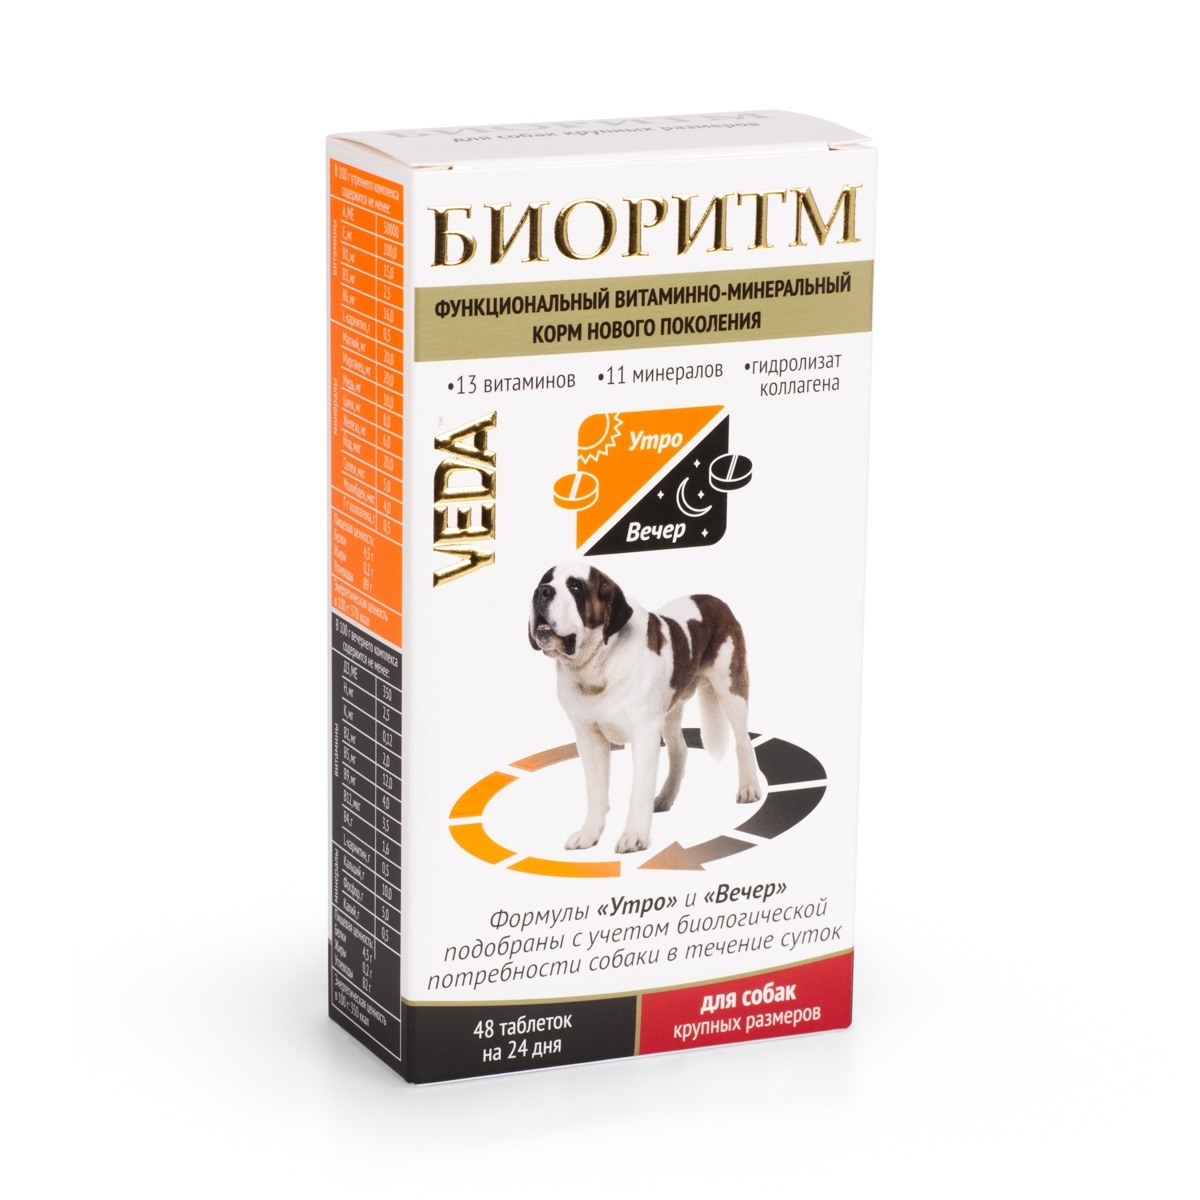 Веда Веда биоритм витамины для собак крупных пород (20 г) веда веда шоколад молочный для собак 45 г